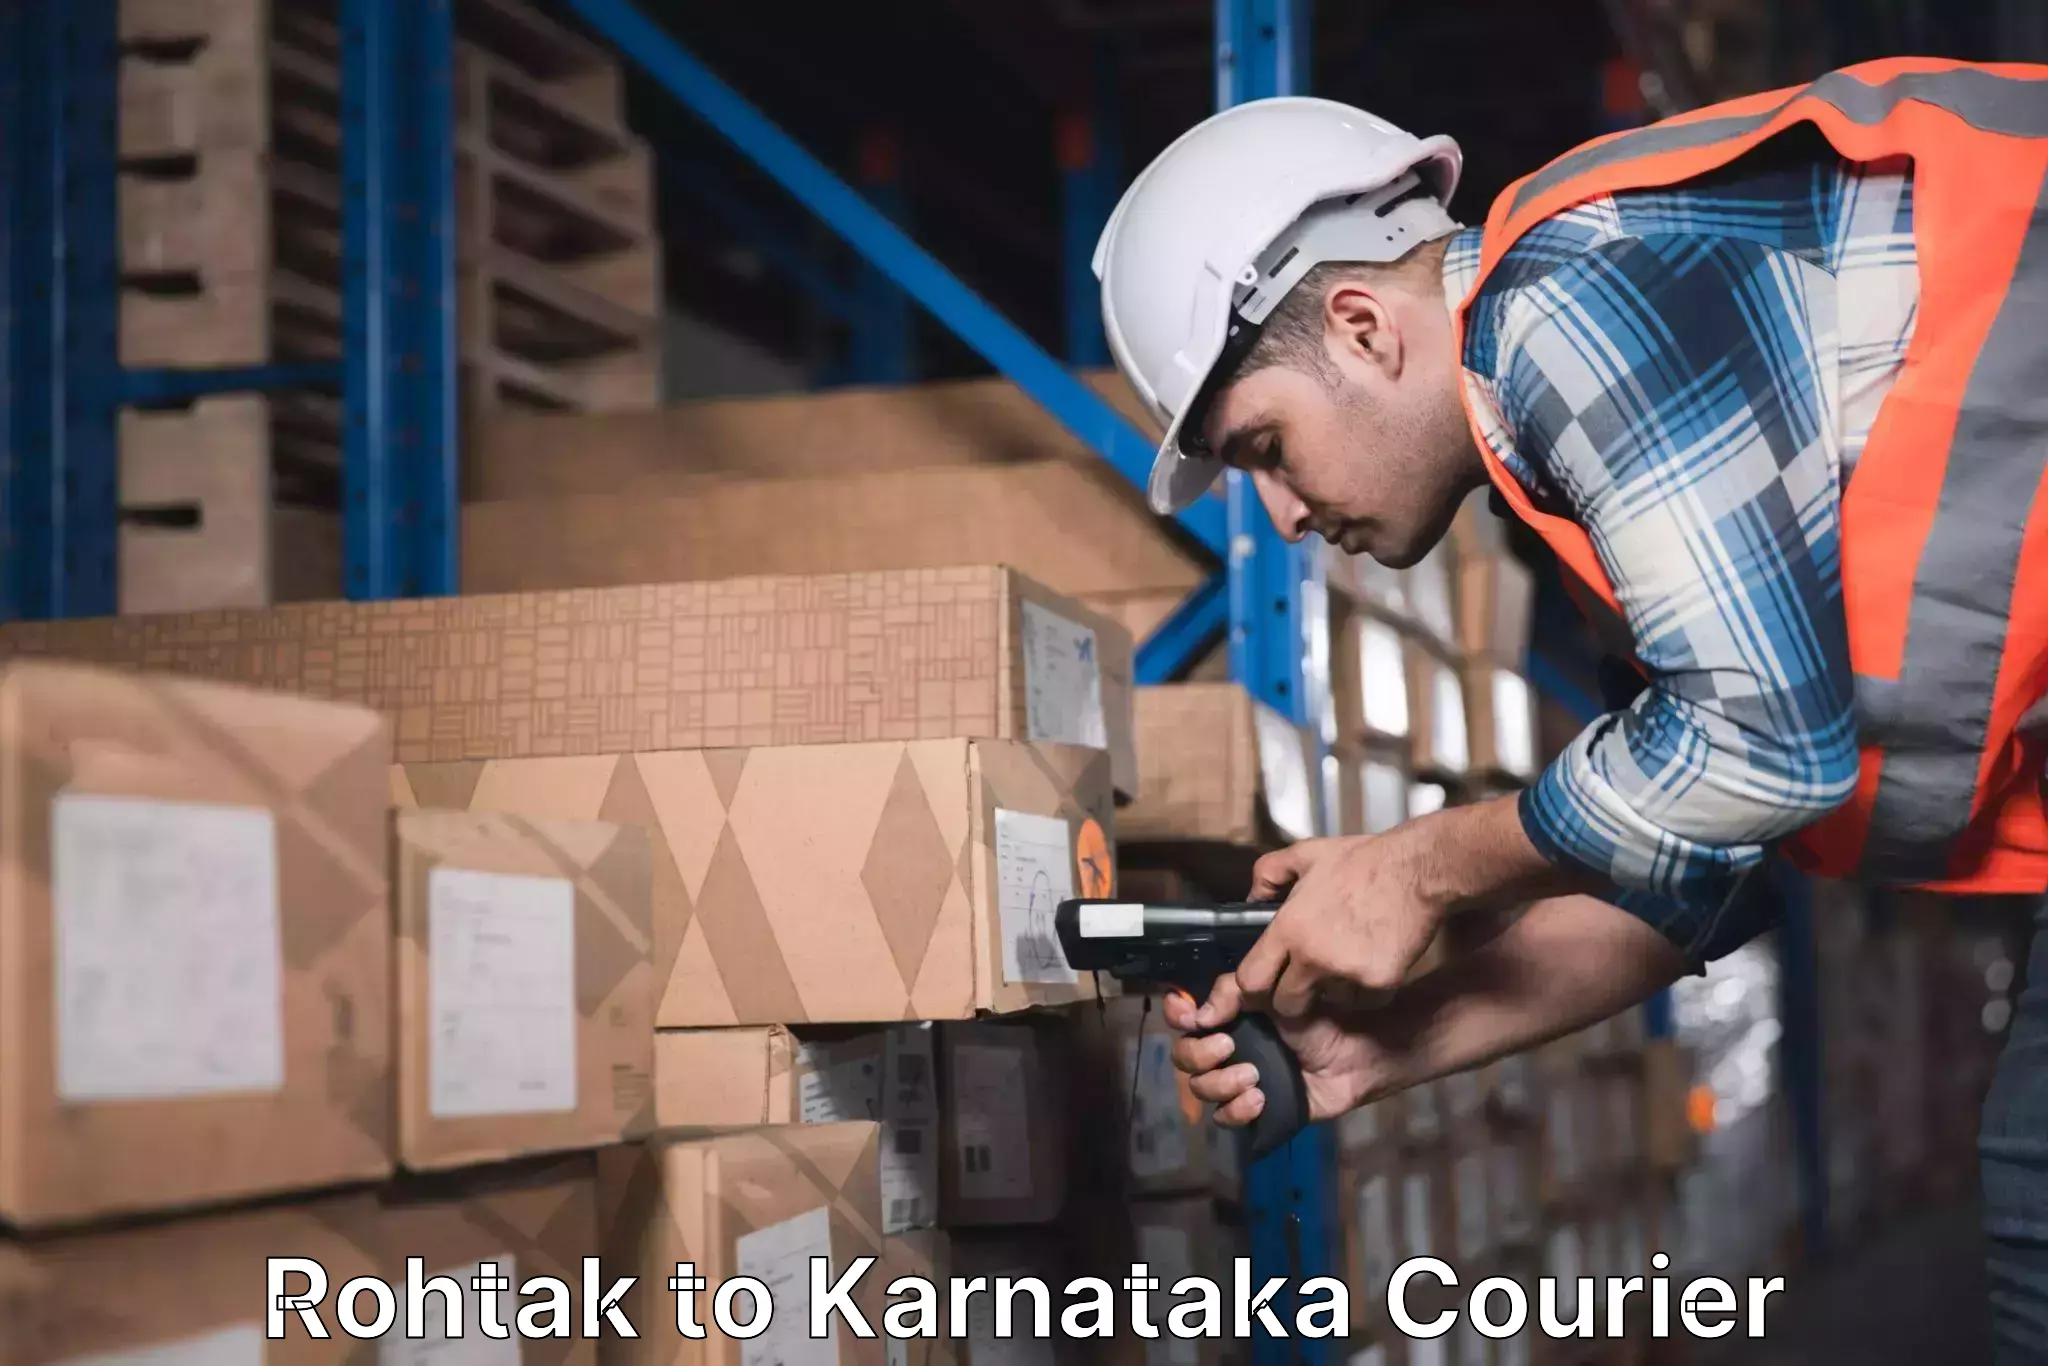 Courier service innovation Rohtak to Panja Dakshin Kannad